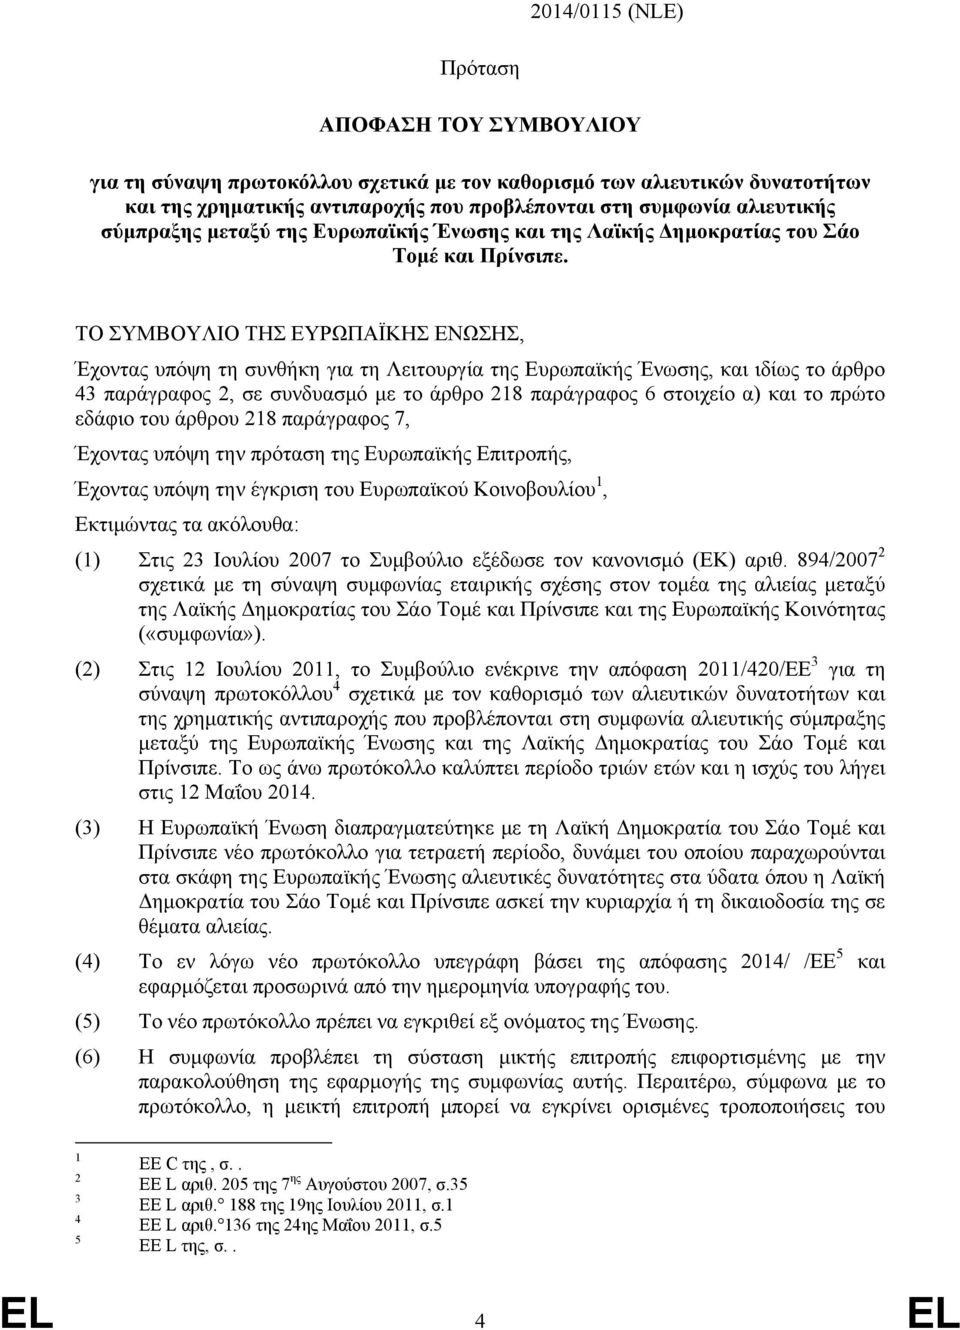 παράγραφος 2, σε συνδυασμό με το άρθρο 218 παράγραφος 6 στοιχείο α) και το πρώτο εδάφιο του άρθρου 218 παράγραφος 7, Έχοντας υπόψη την πρόταση της Ευρωπαϊκής Επιτροπής, Έχοντας υπόψη την έγκριση του